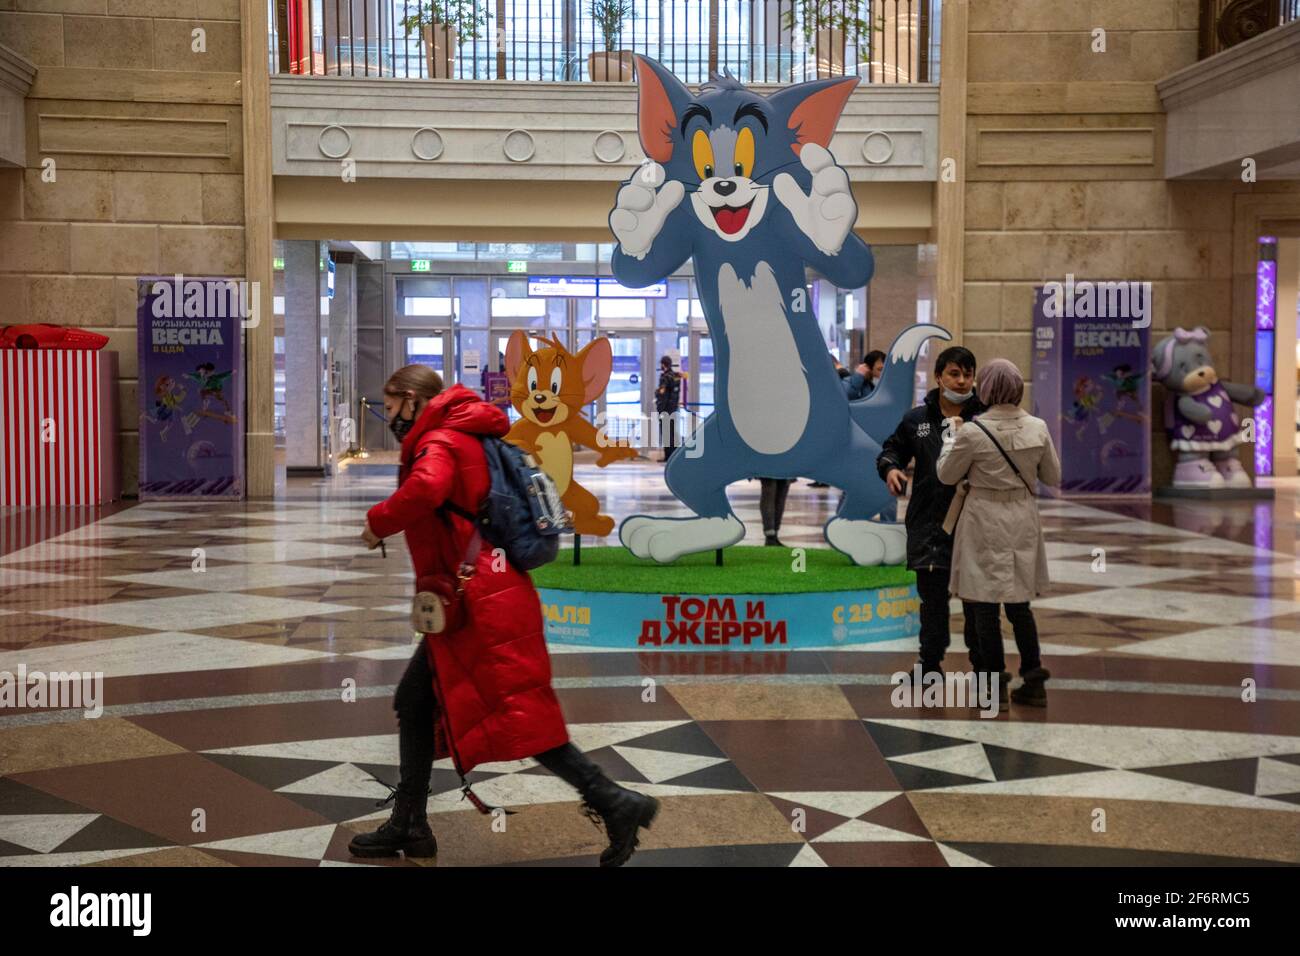 Moskau, Russland. März 2021. Die Werbeinstallation Tom & Jerry Film, die Warner Bros Picters am 26. Februar 2021 in den USA veröffentlicht hat, wurde in der Lobby des Children's World Stores im Zentrum der russischen Stadt Moskau installiert Stockfoto